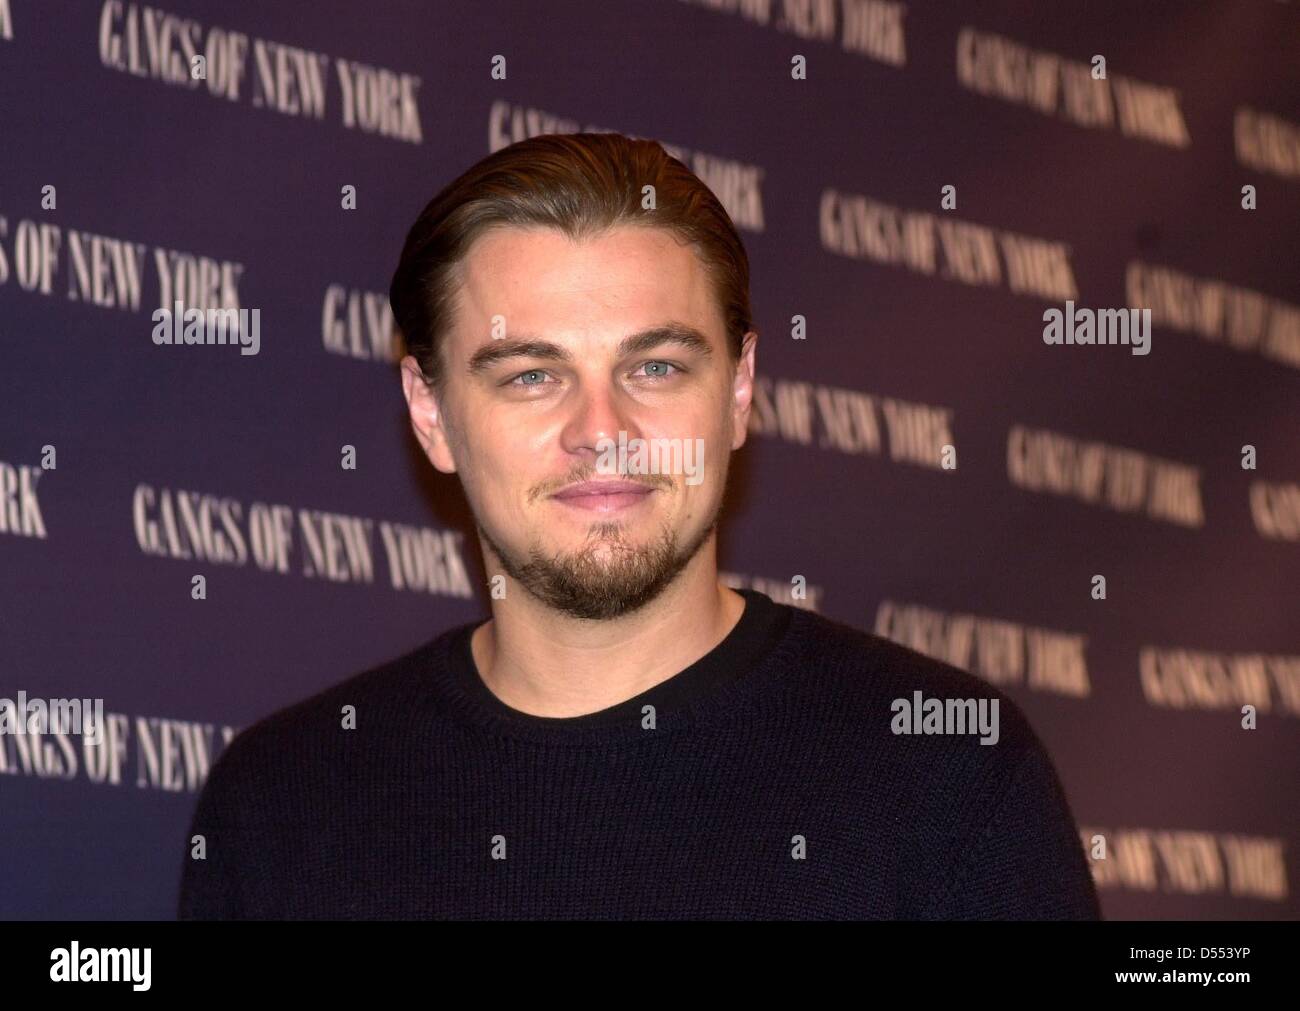 Leonardo DiCaprio auf der Pressekonferenz für den Film "Gangs of New York" in Berlin. Stockfoto